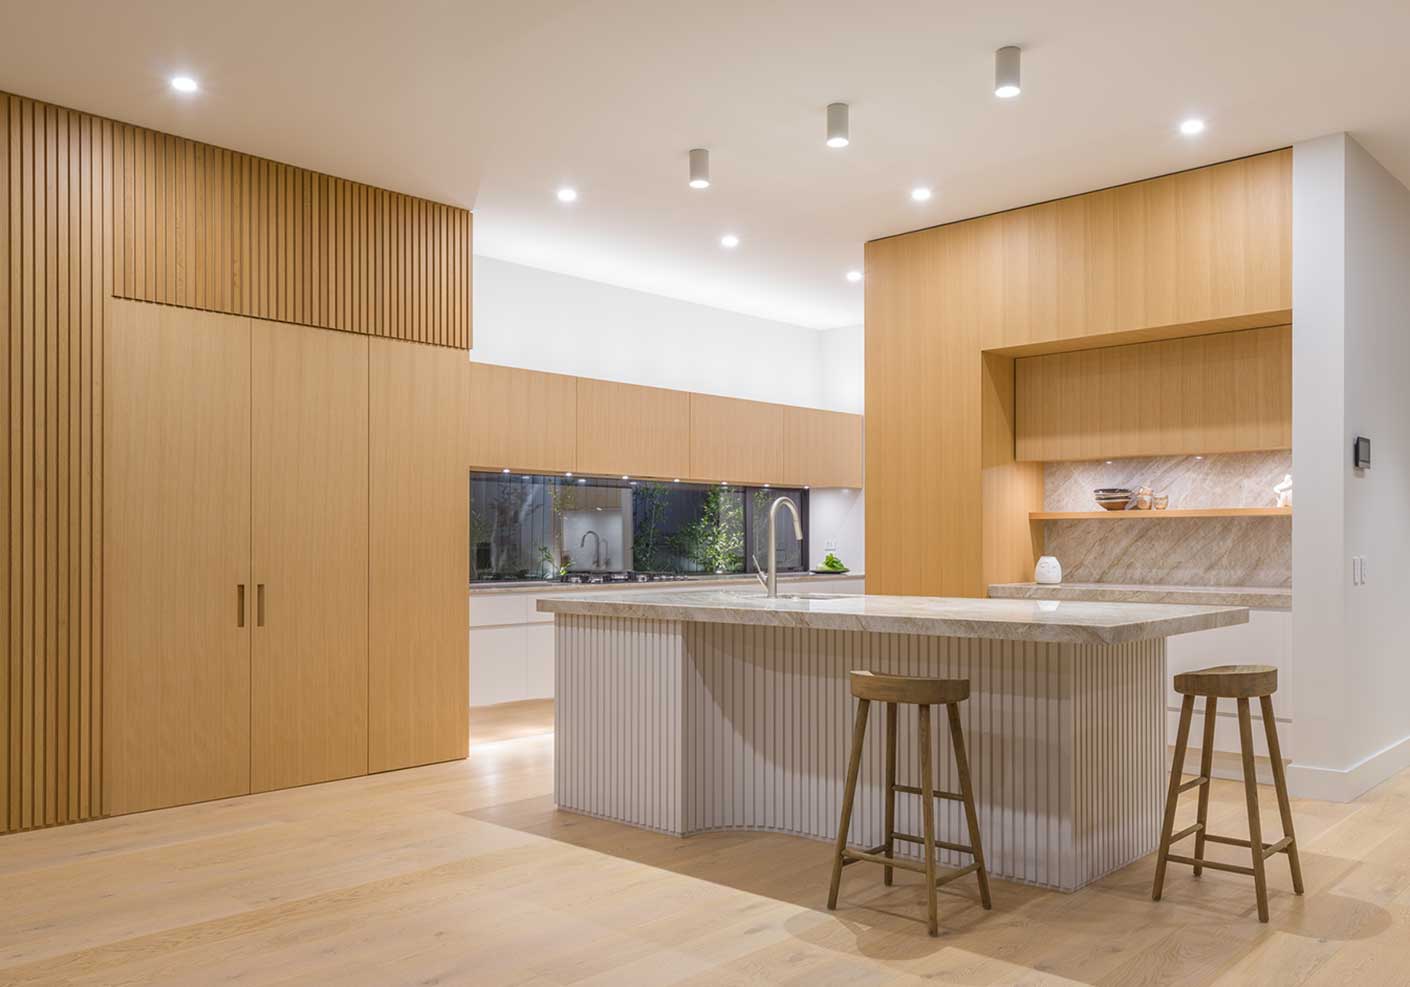 Warm kitchen cabinets with storage